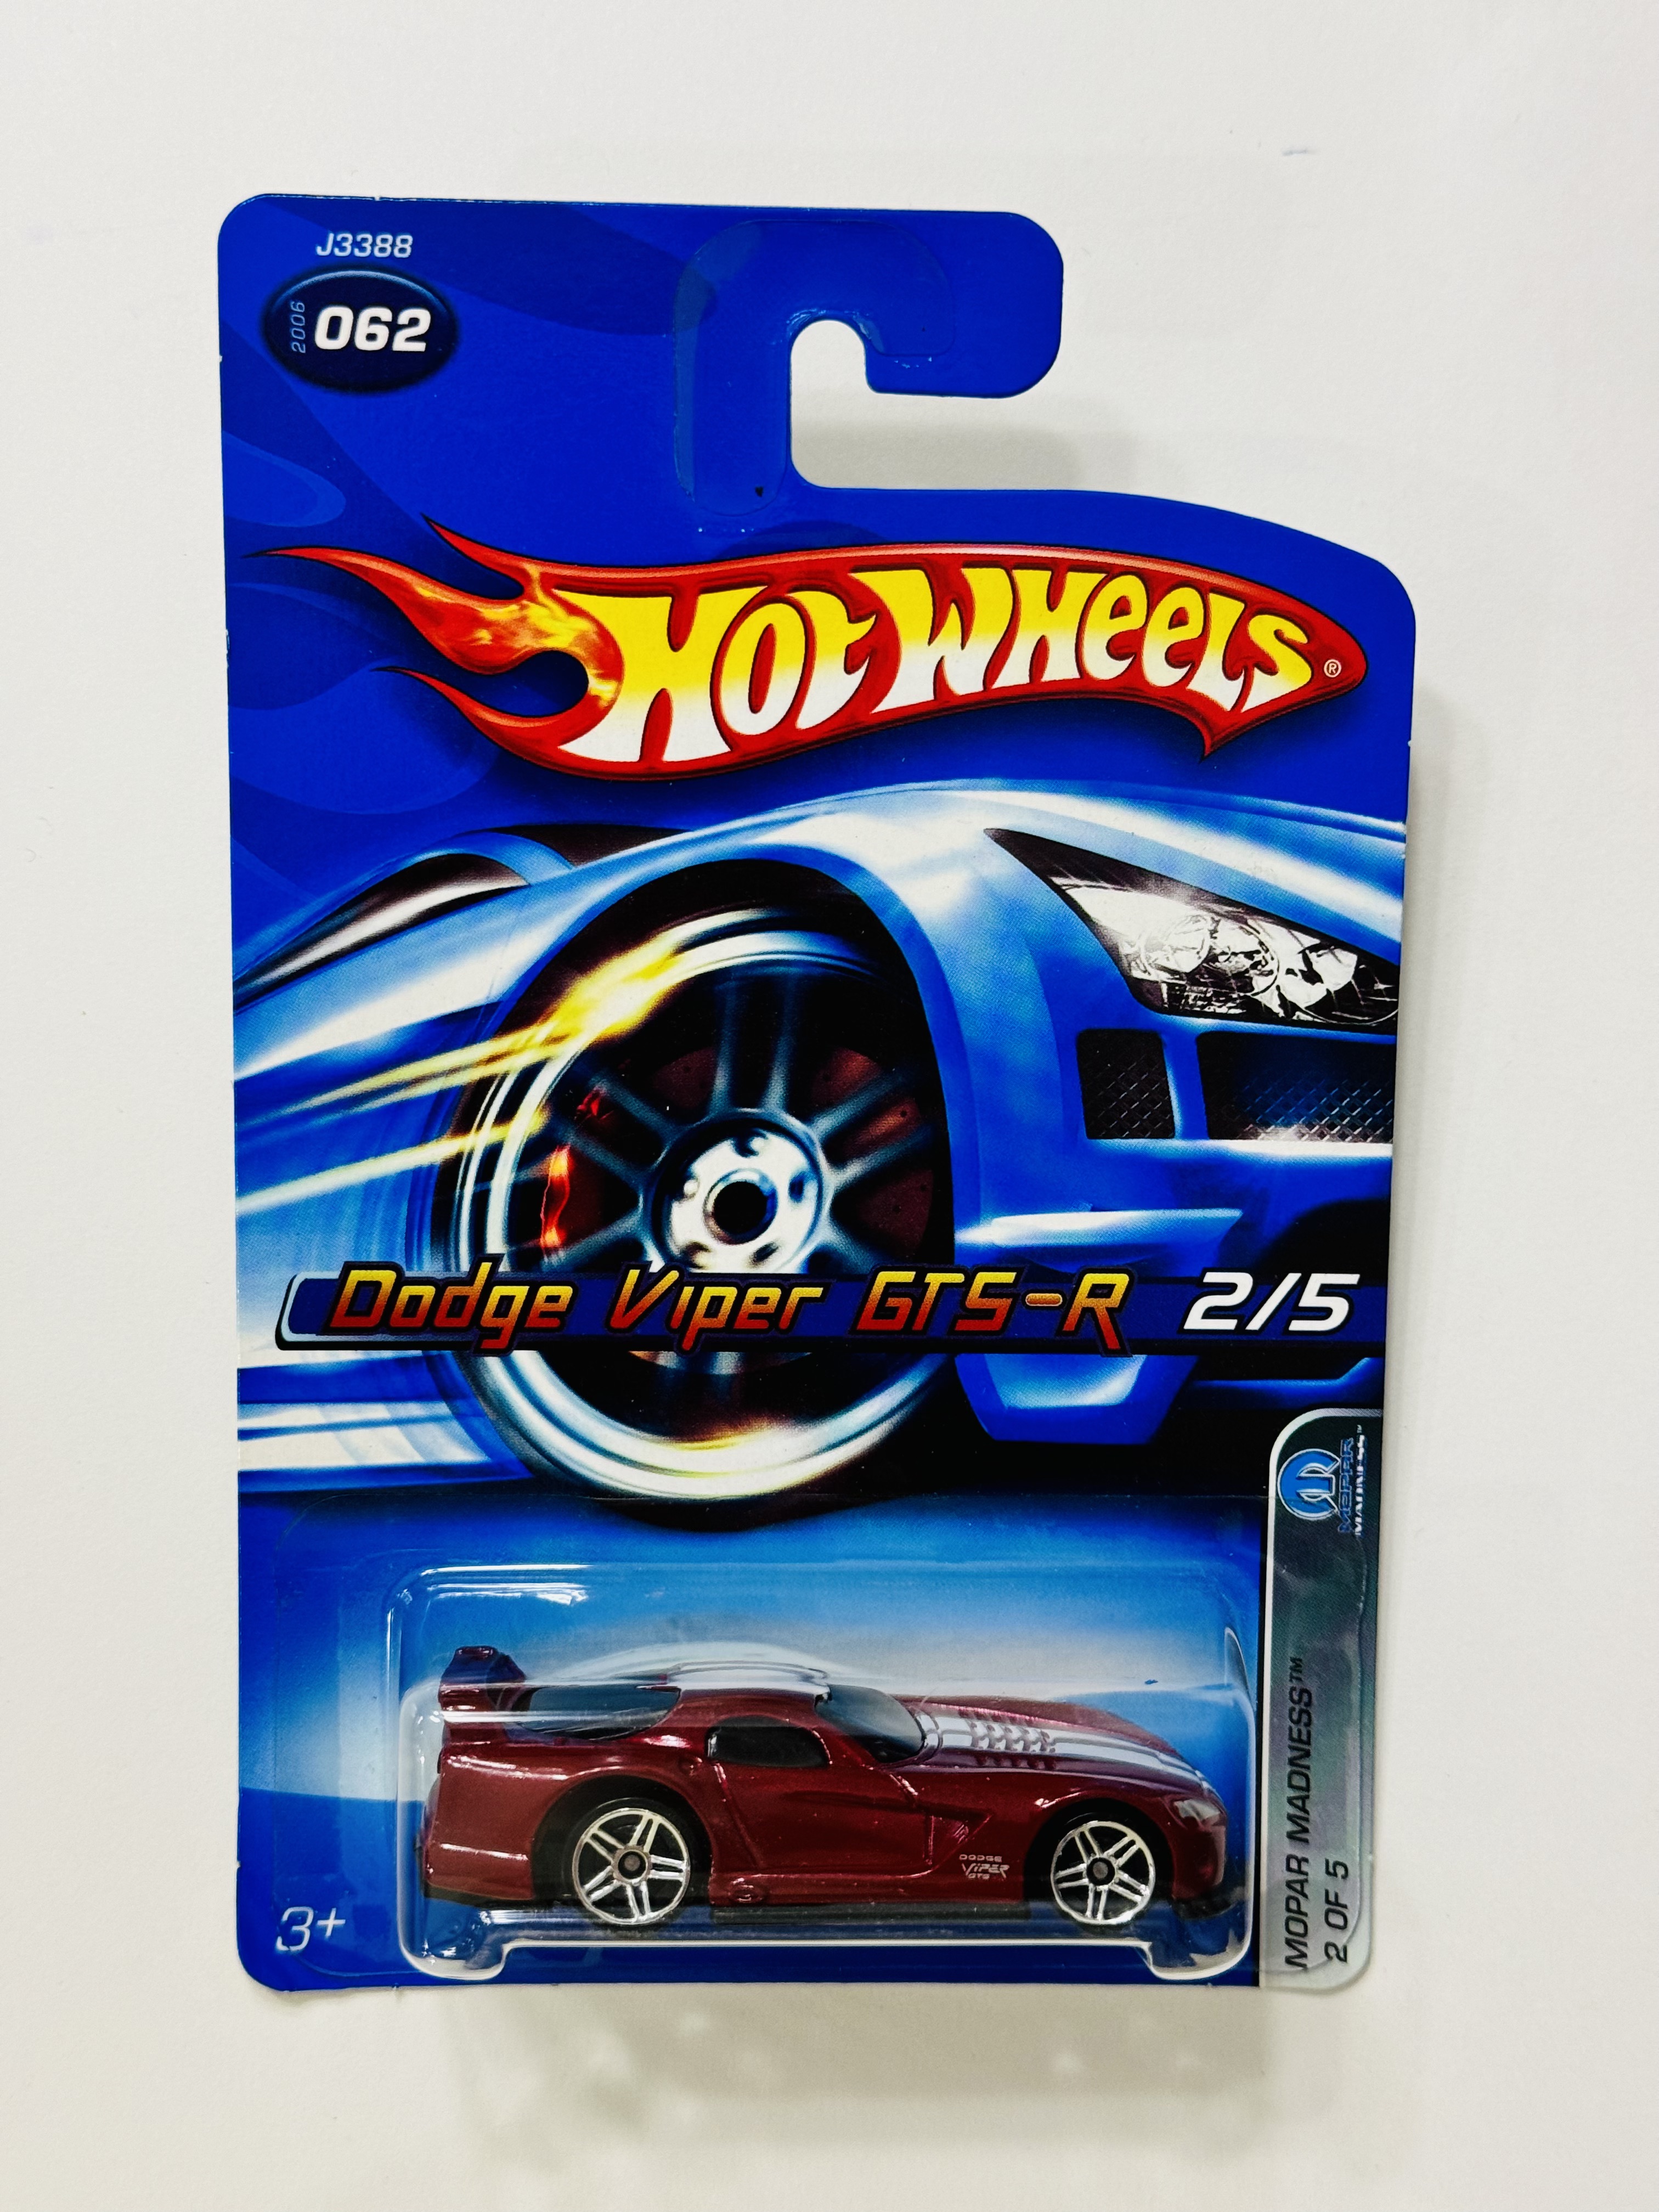 Hot Wheels #062 Dodge Viper GTS-R